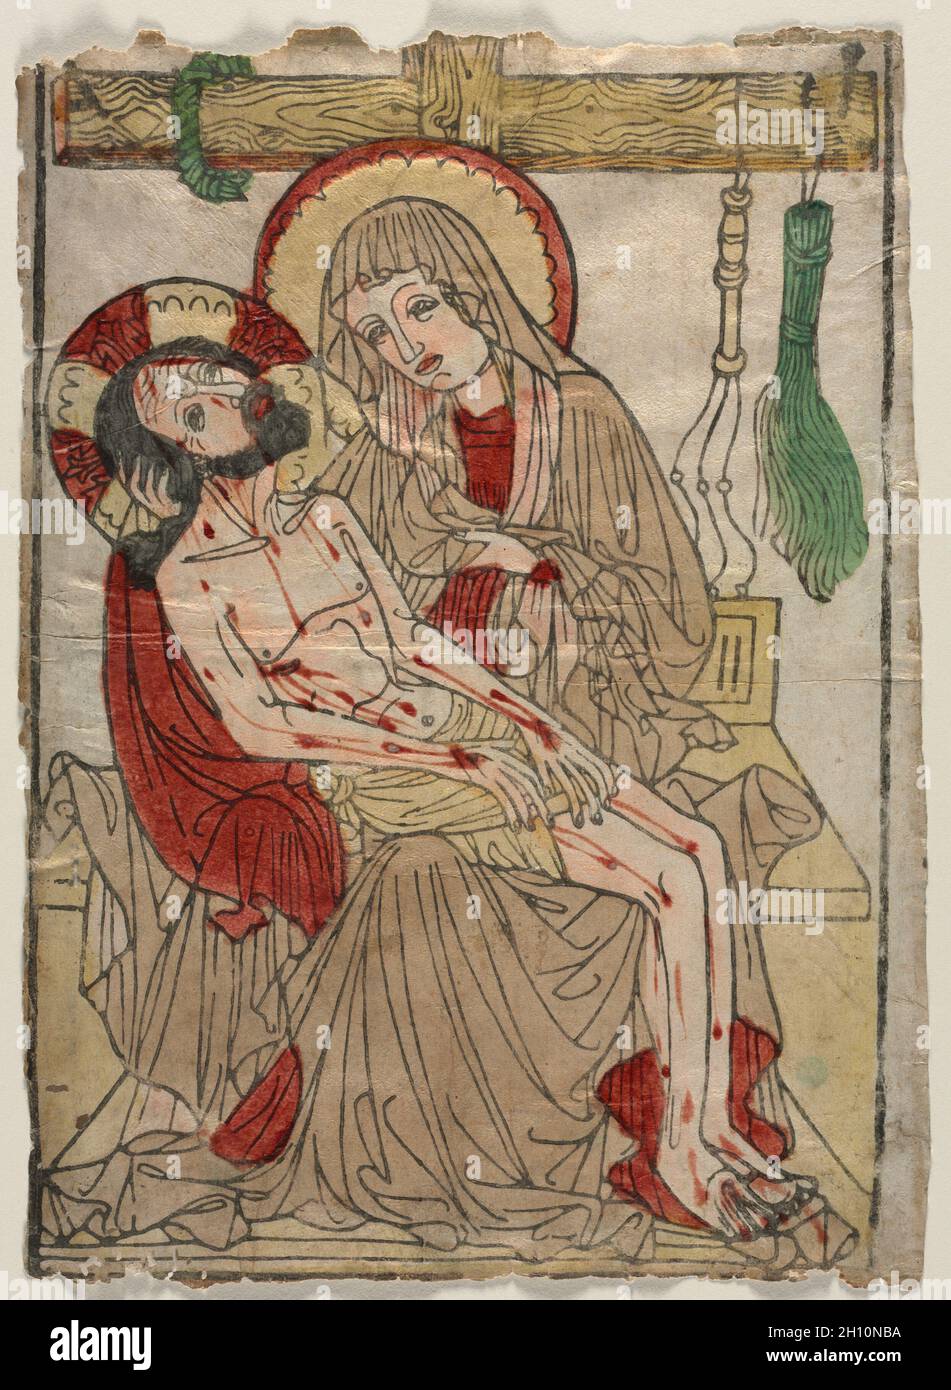 Pietà, c. 1460. La Germania meridionale, Svevia, XV secolo. Xilografia, colorati a mano con acquerello; foglio: 38,7 x 28,8 cm (15 1/4 x 11 5/16 in.). Foto Stock